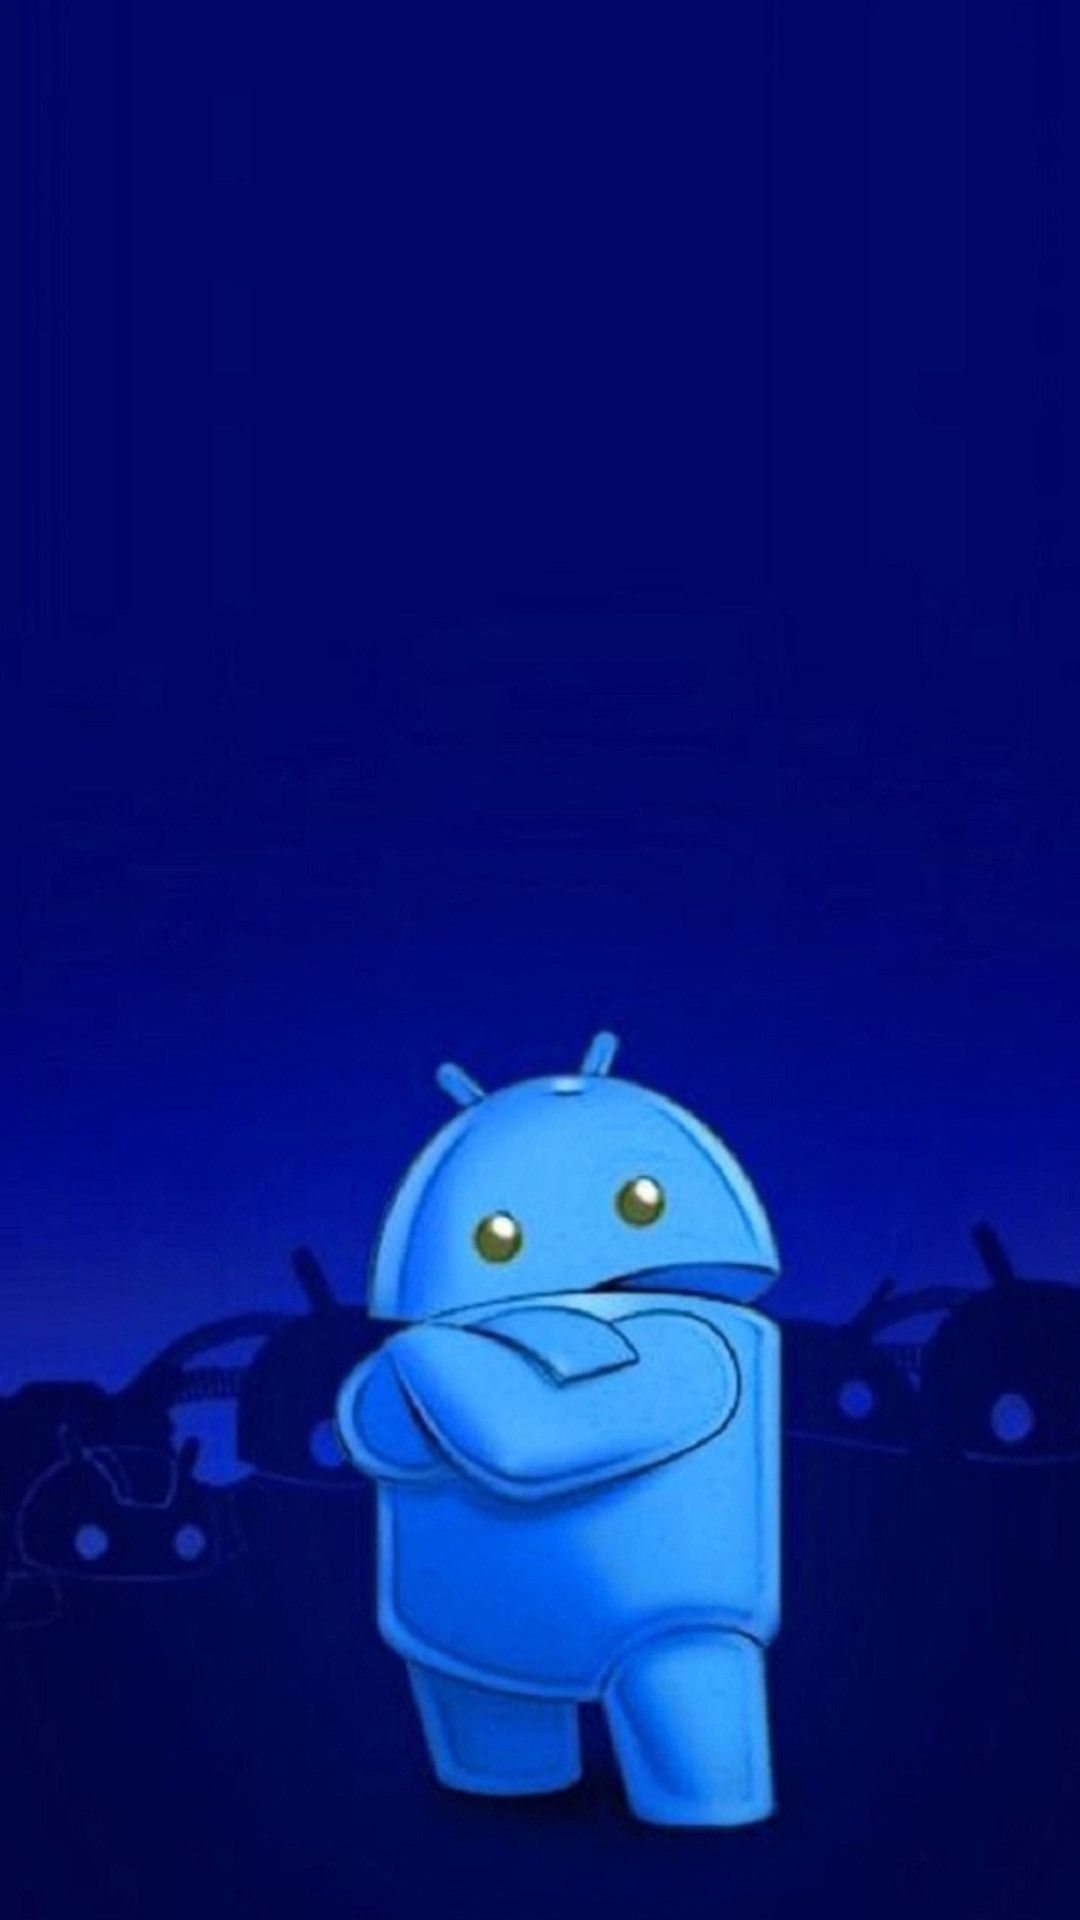 Android Wallpaper Blue (más de 78 imágenes)